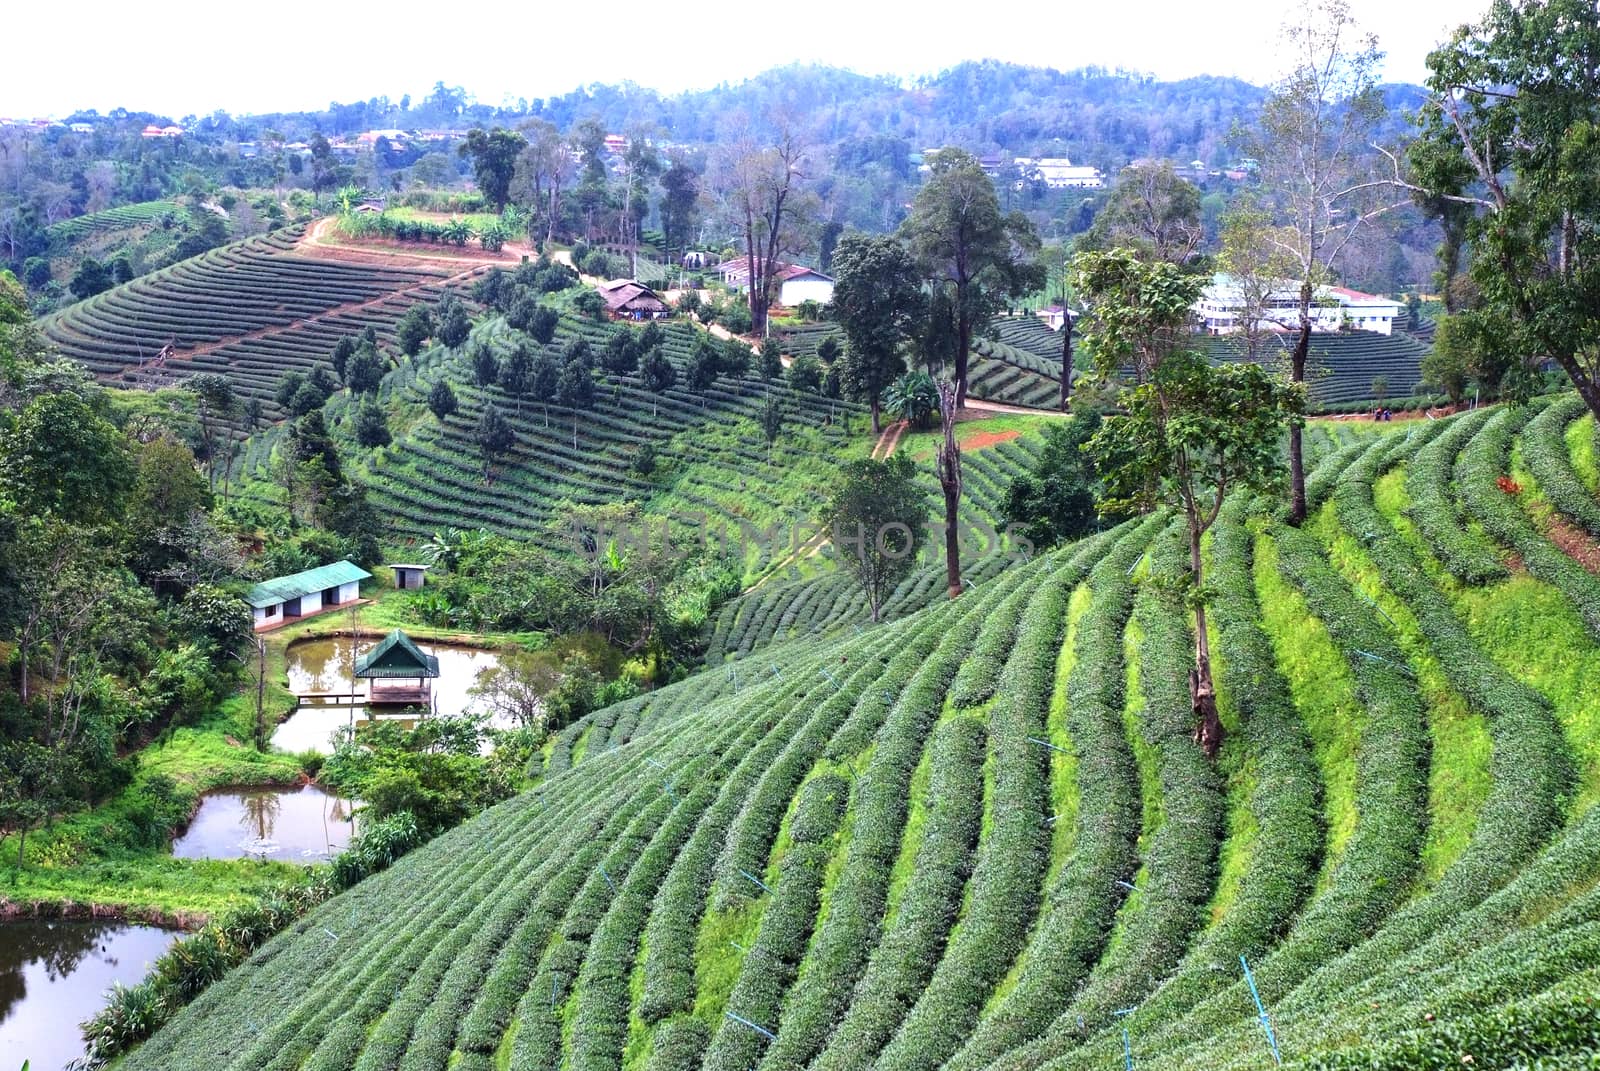 Tea Plantation Landscape